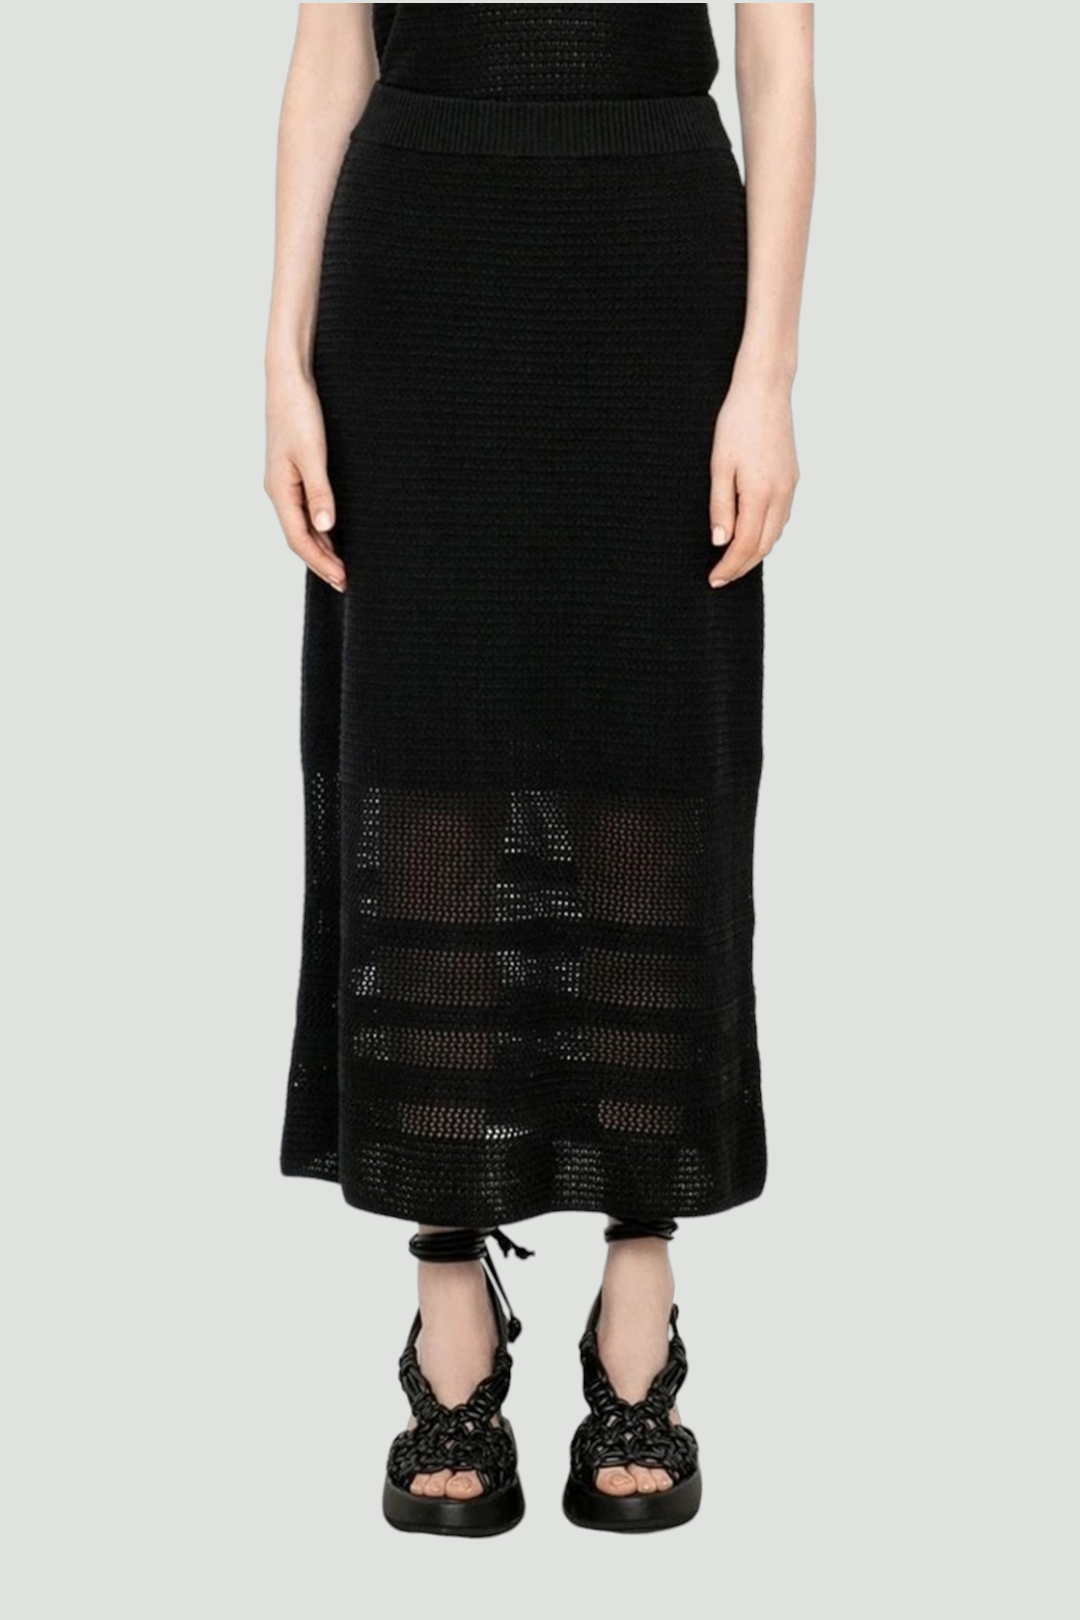 Veronika Maine in Crochet Midi Skirt in Black